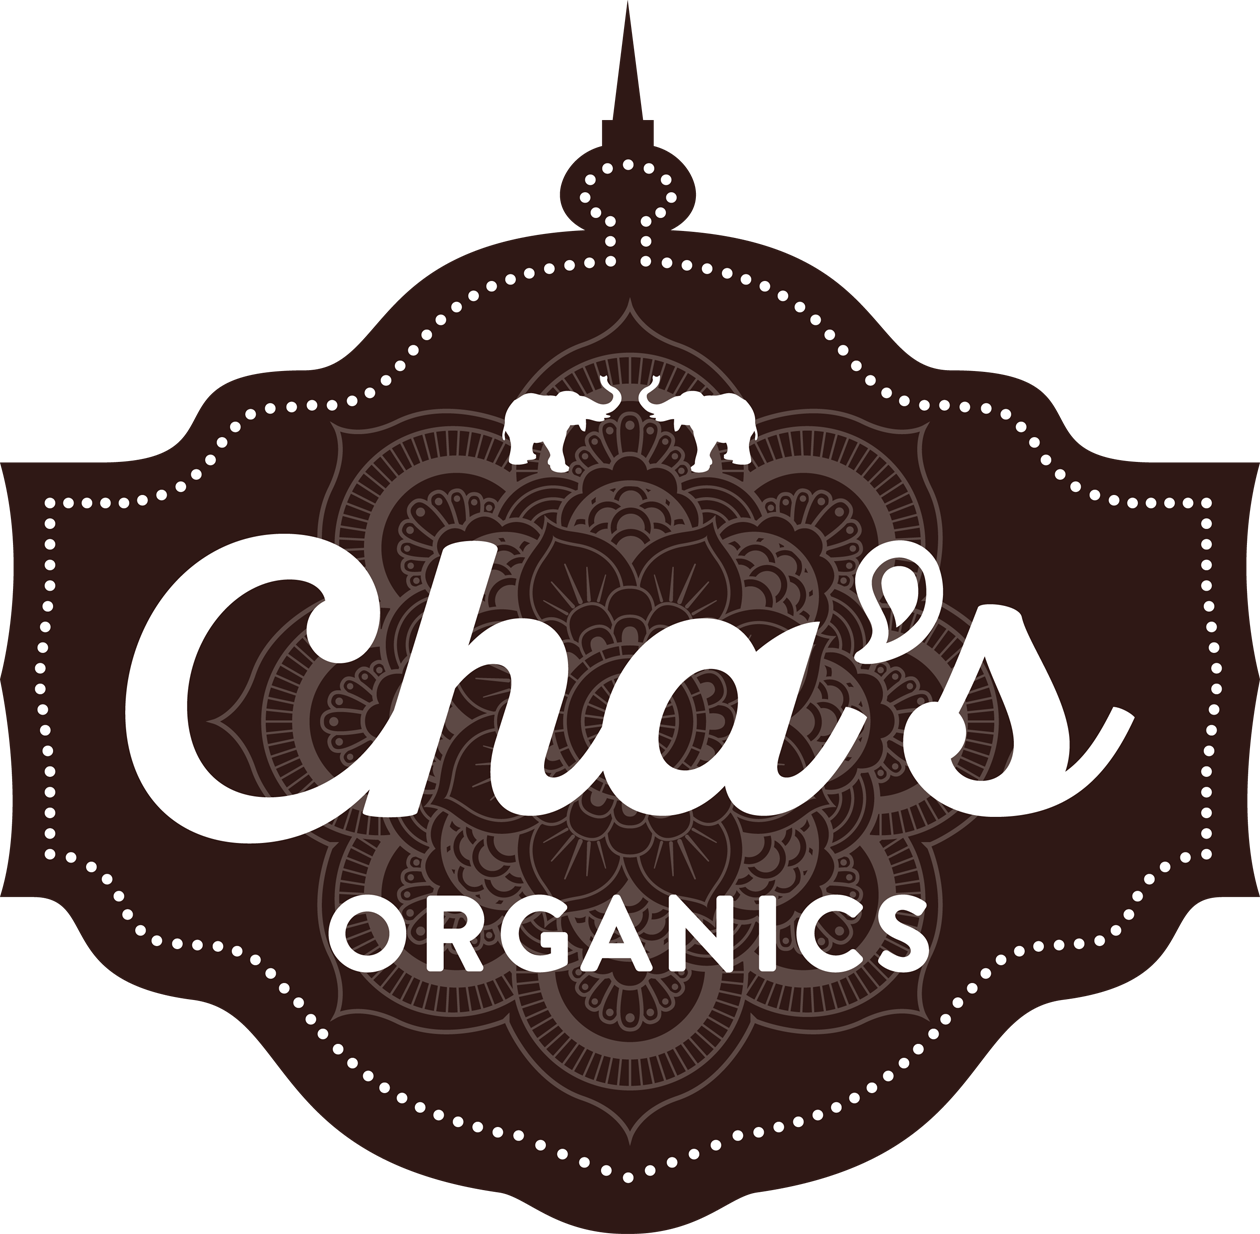 Cha's organics